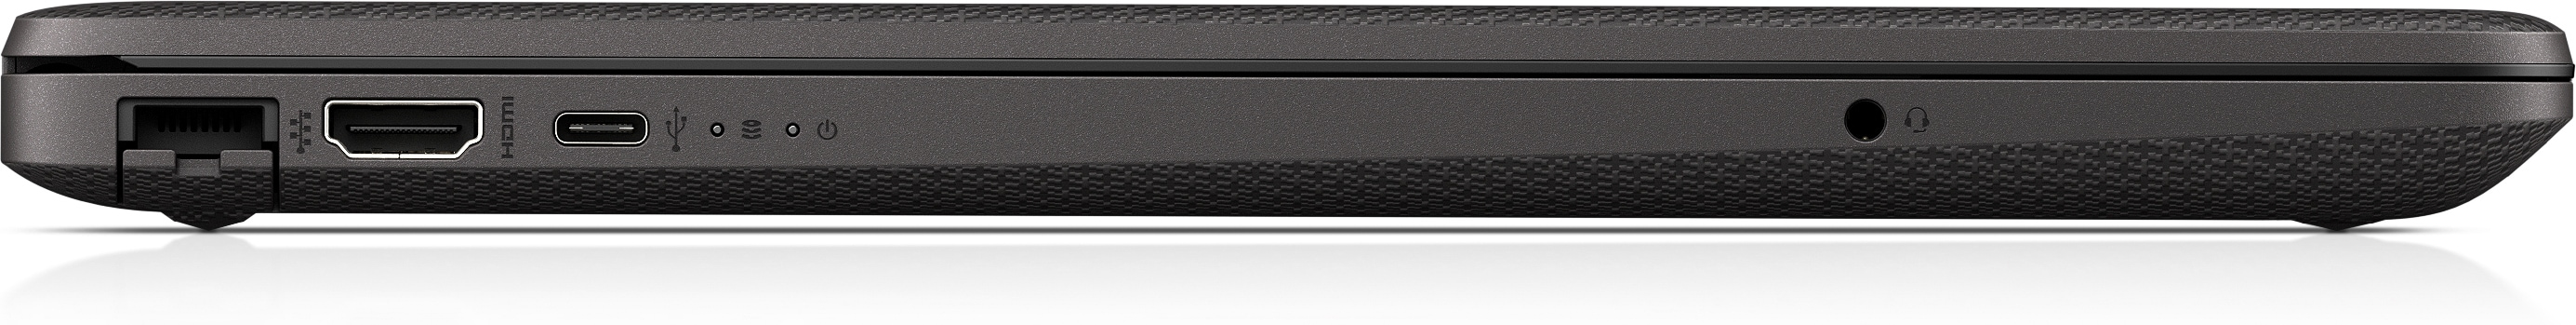 Notebook HP 255 G8 3020E Computer portatile 39,6 cm (15.6